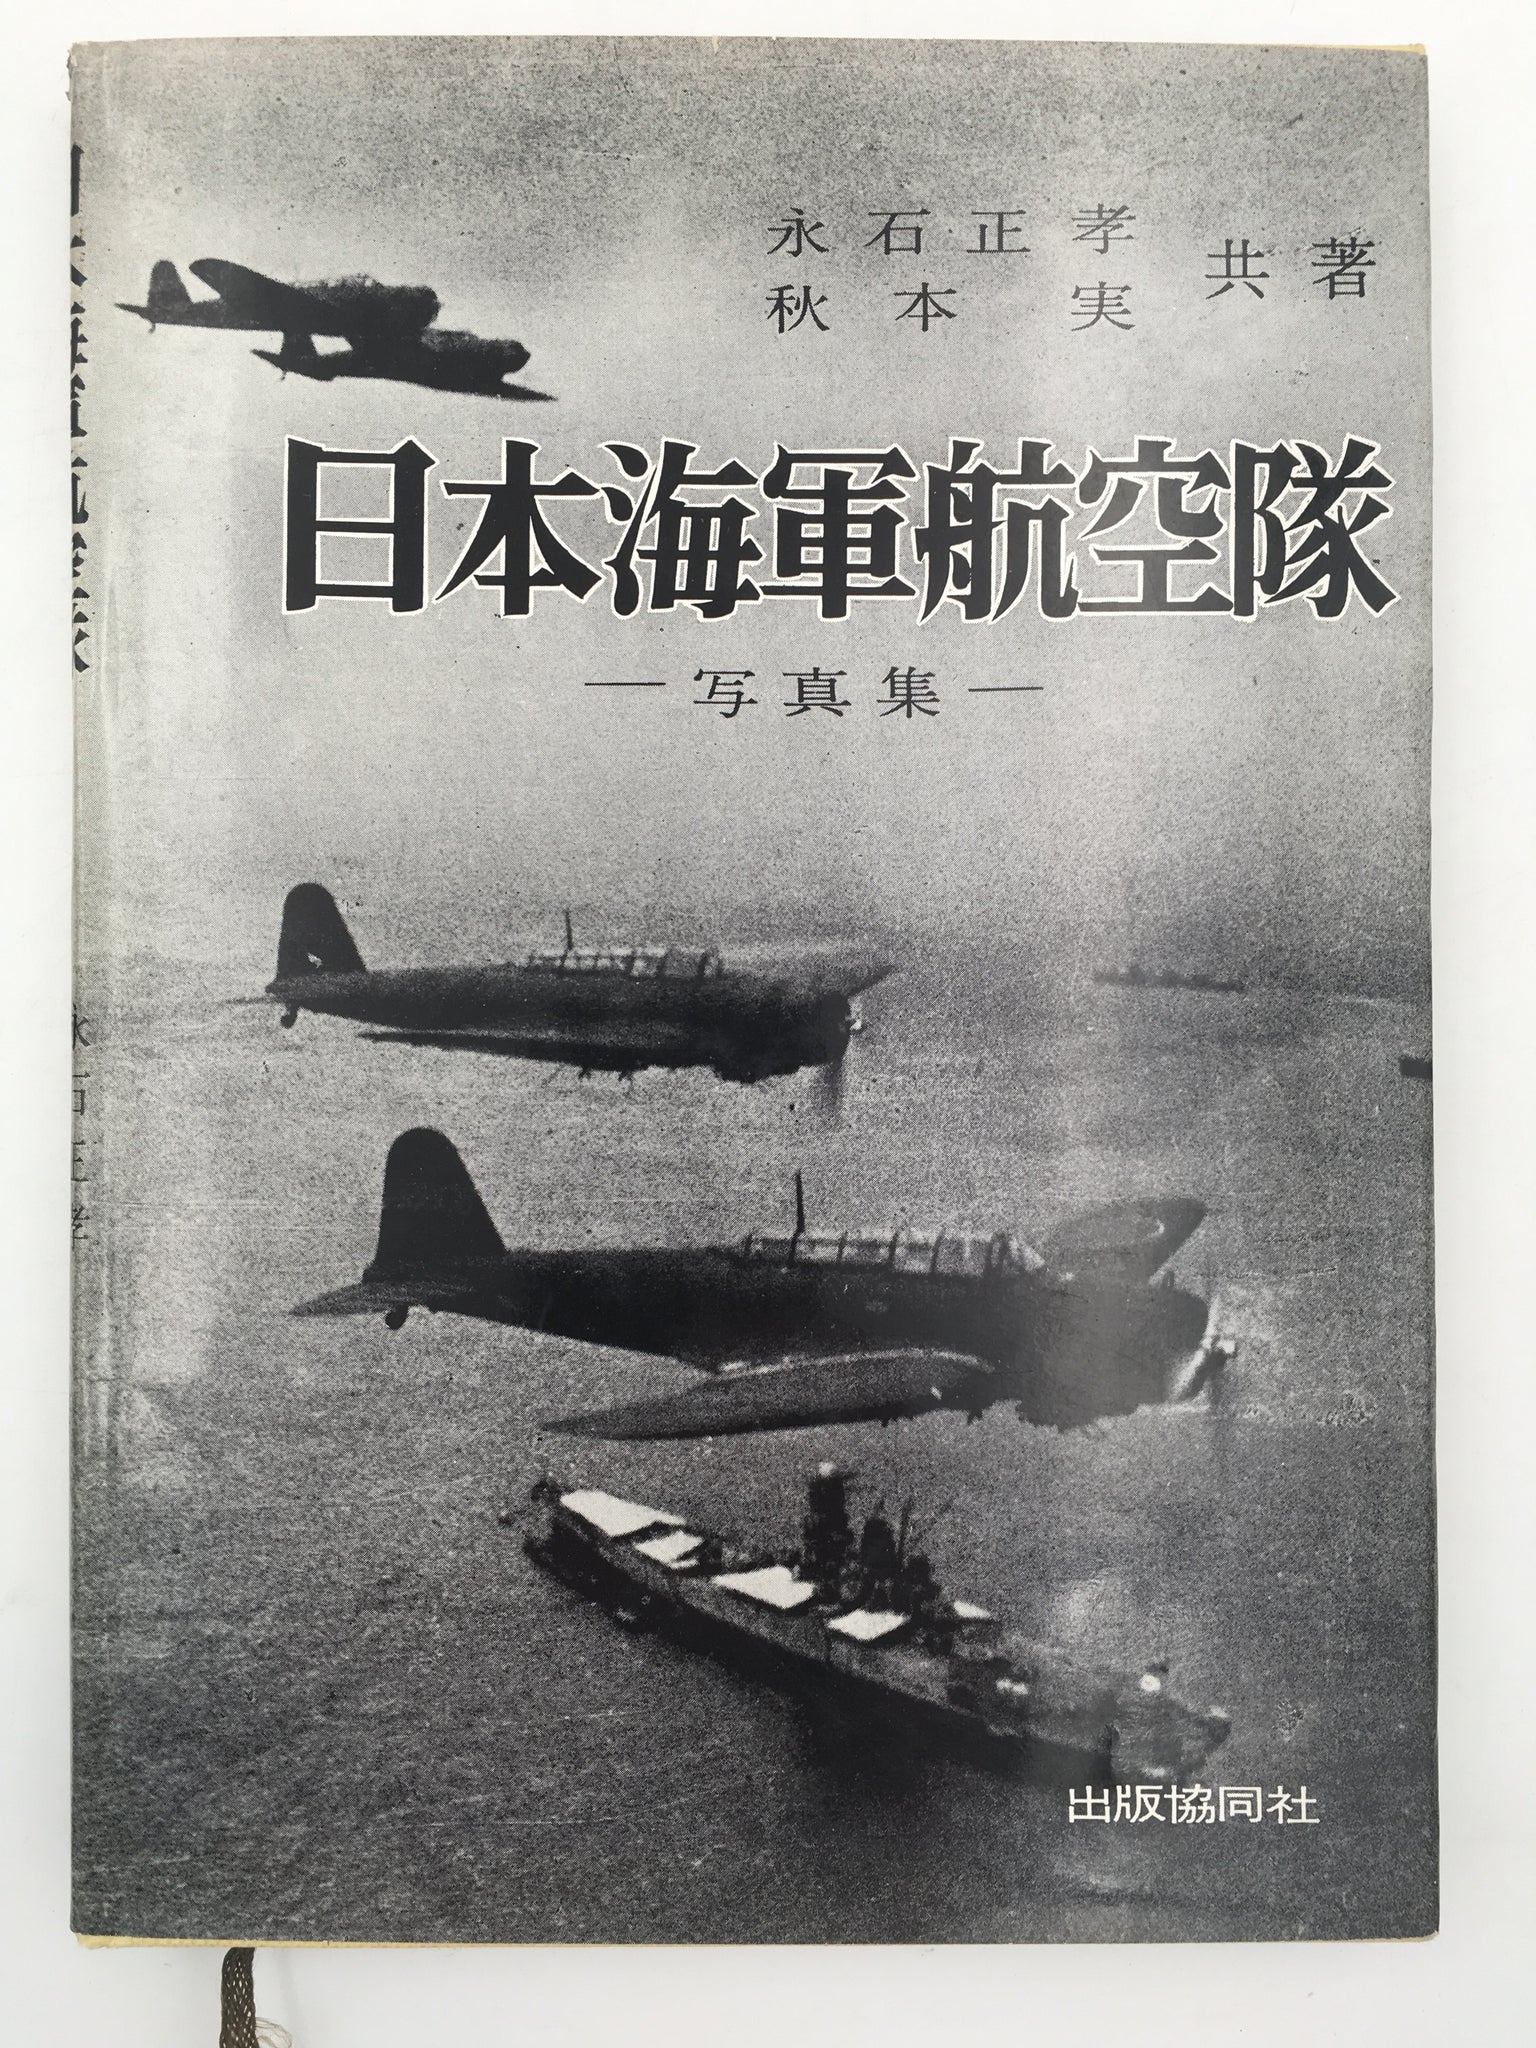 日本陸軍航空隊 ― 写真集 ― – aviation.brussels